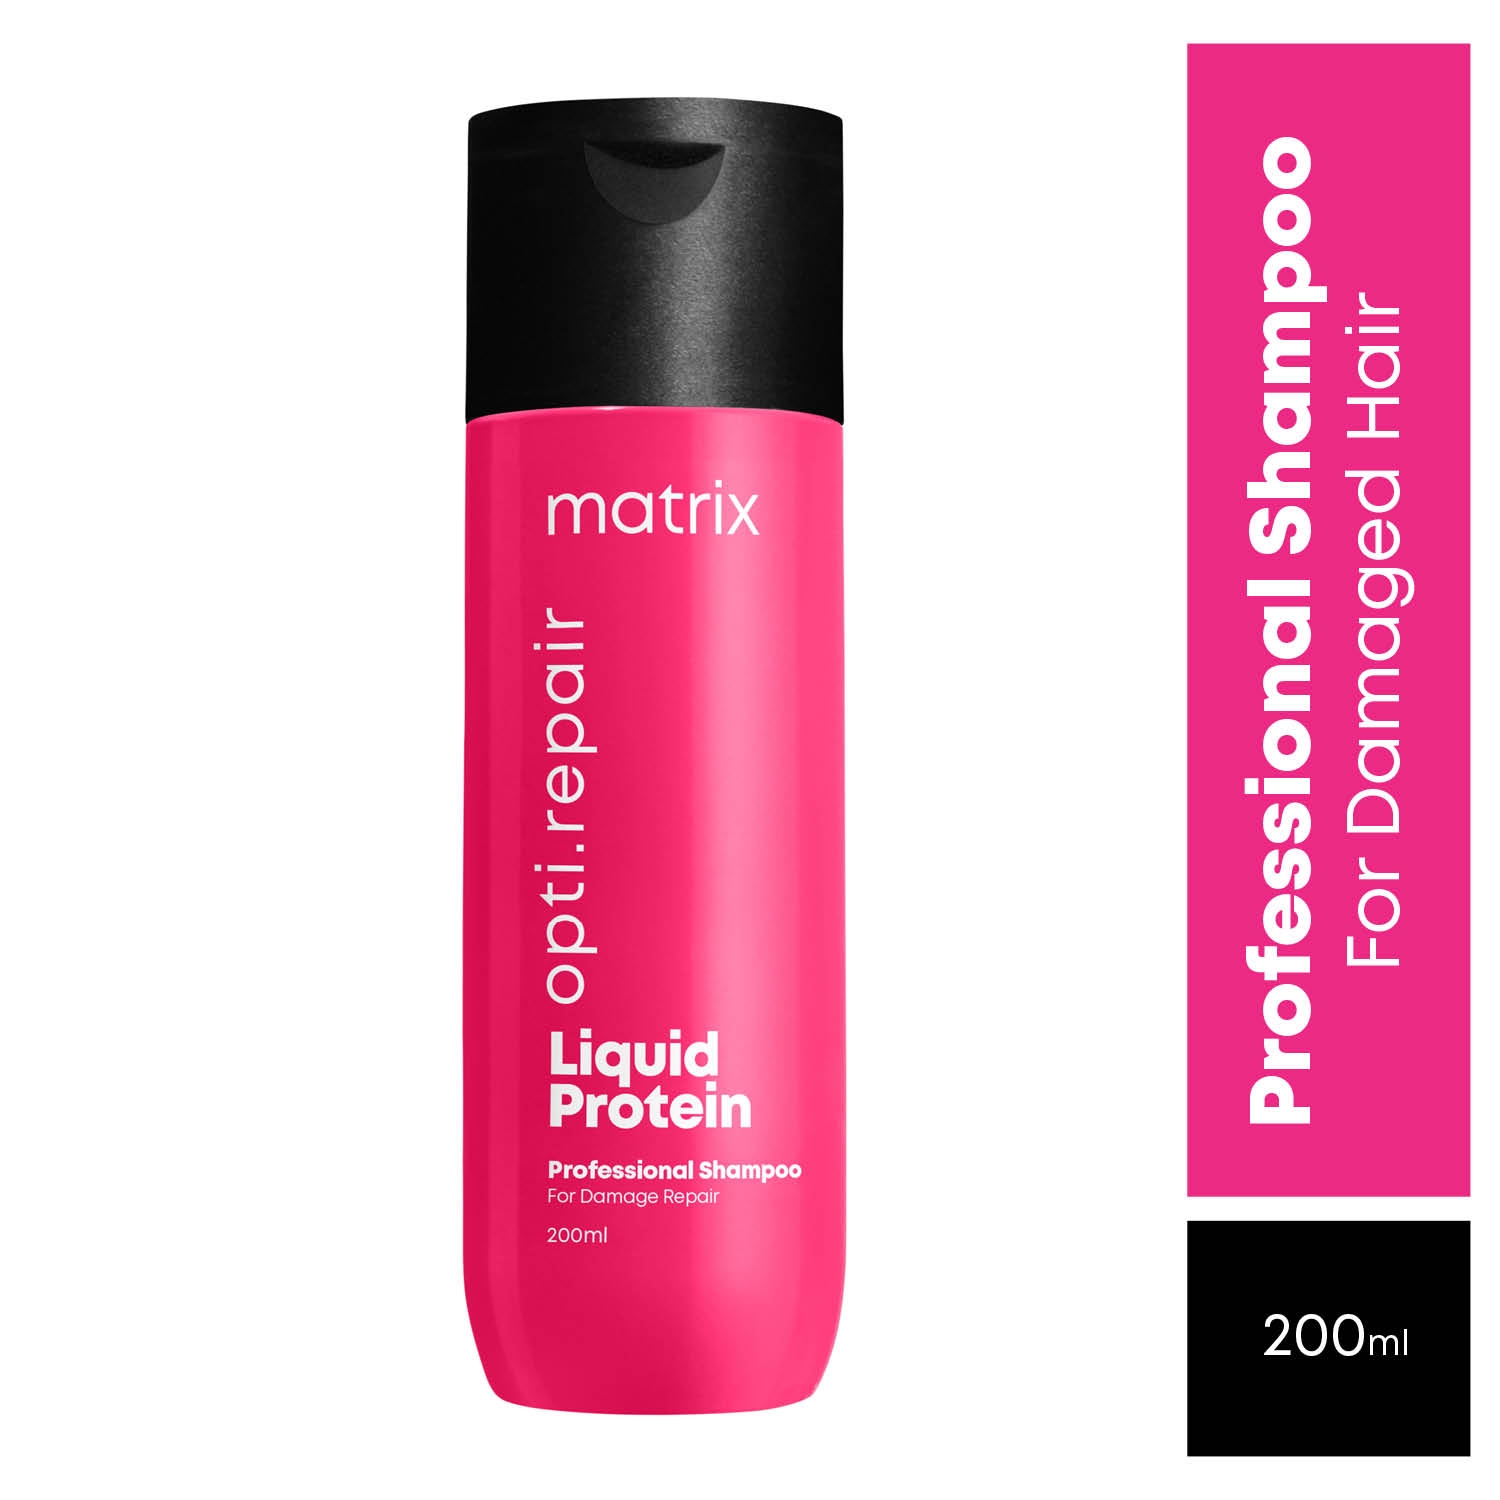 Matrix Opti.Care 3-Step Regime, Up To 4 Days Frizz Control, Shampoo +  Conditioner + Serum